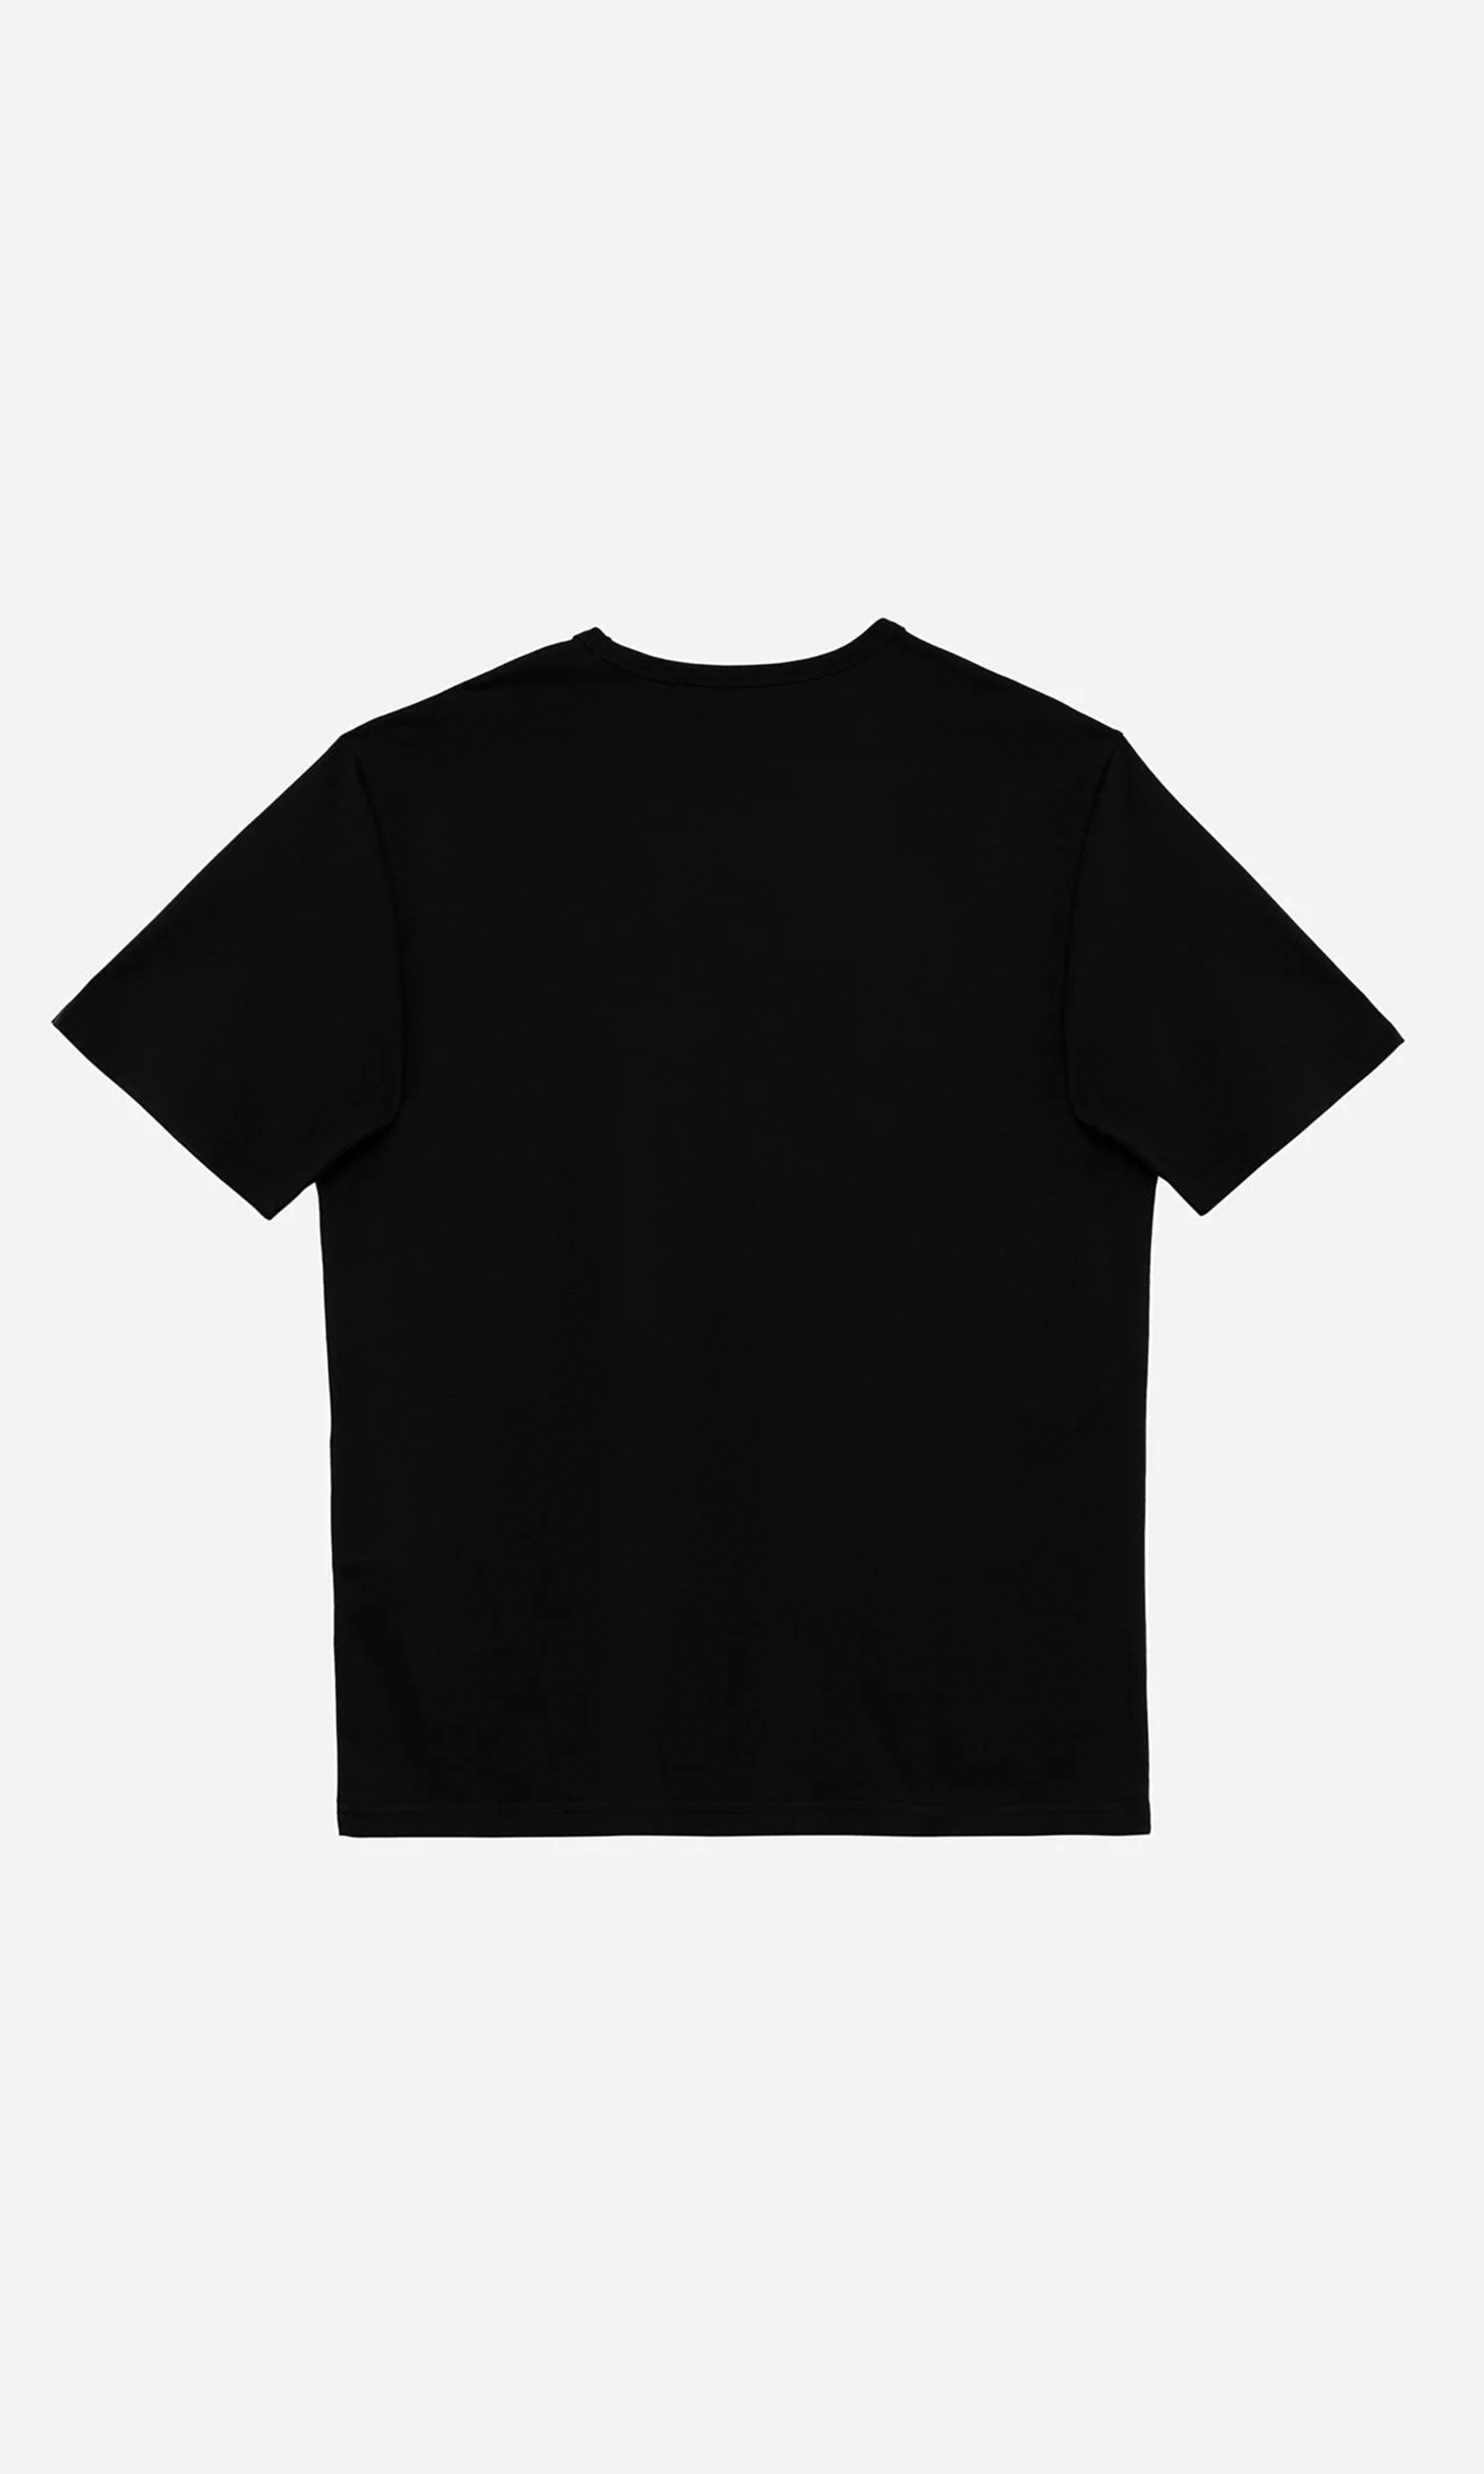 Hermes - Oversize Baskılı Unisex T-Shirt - Siyah